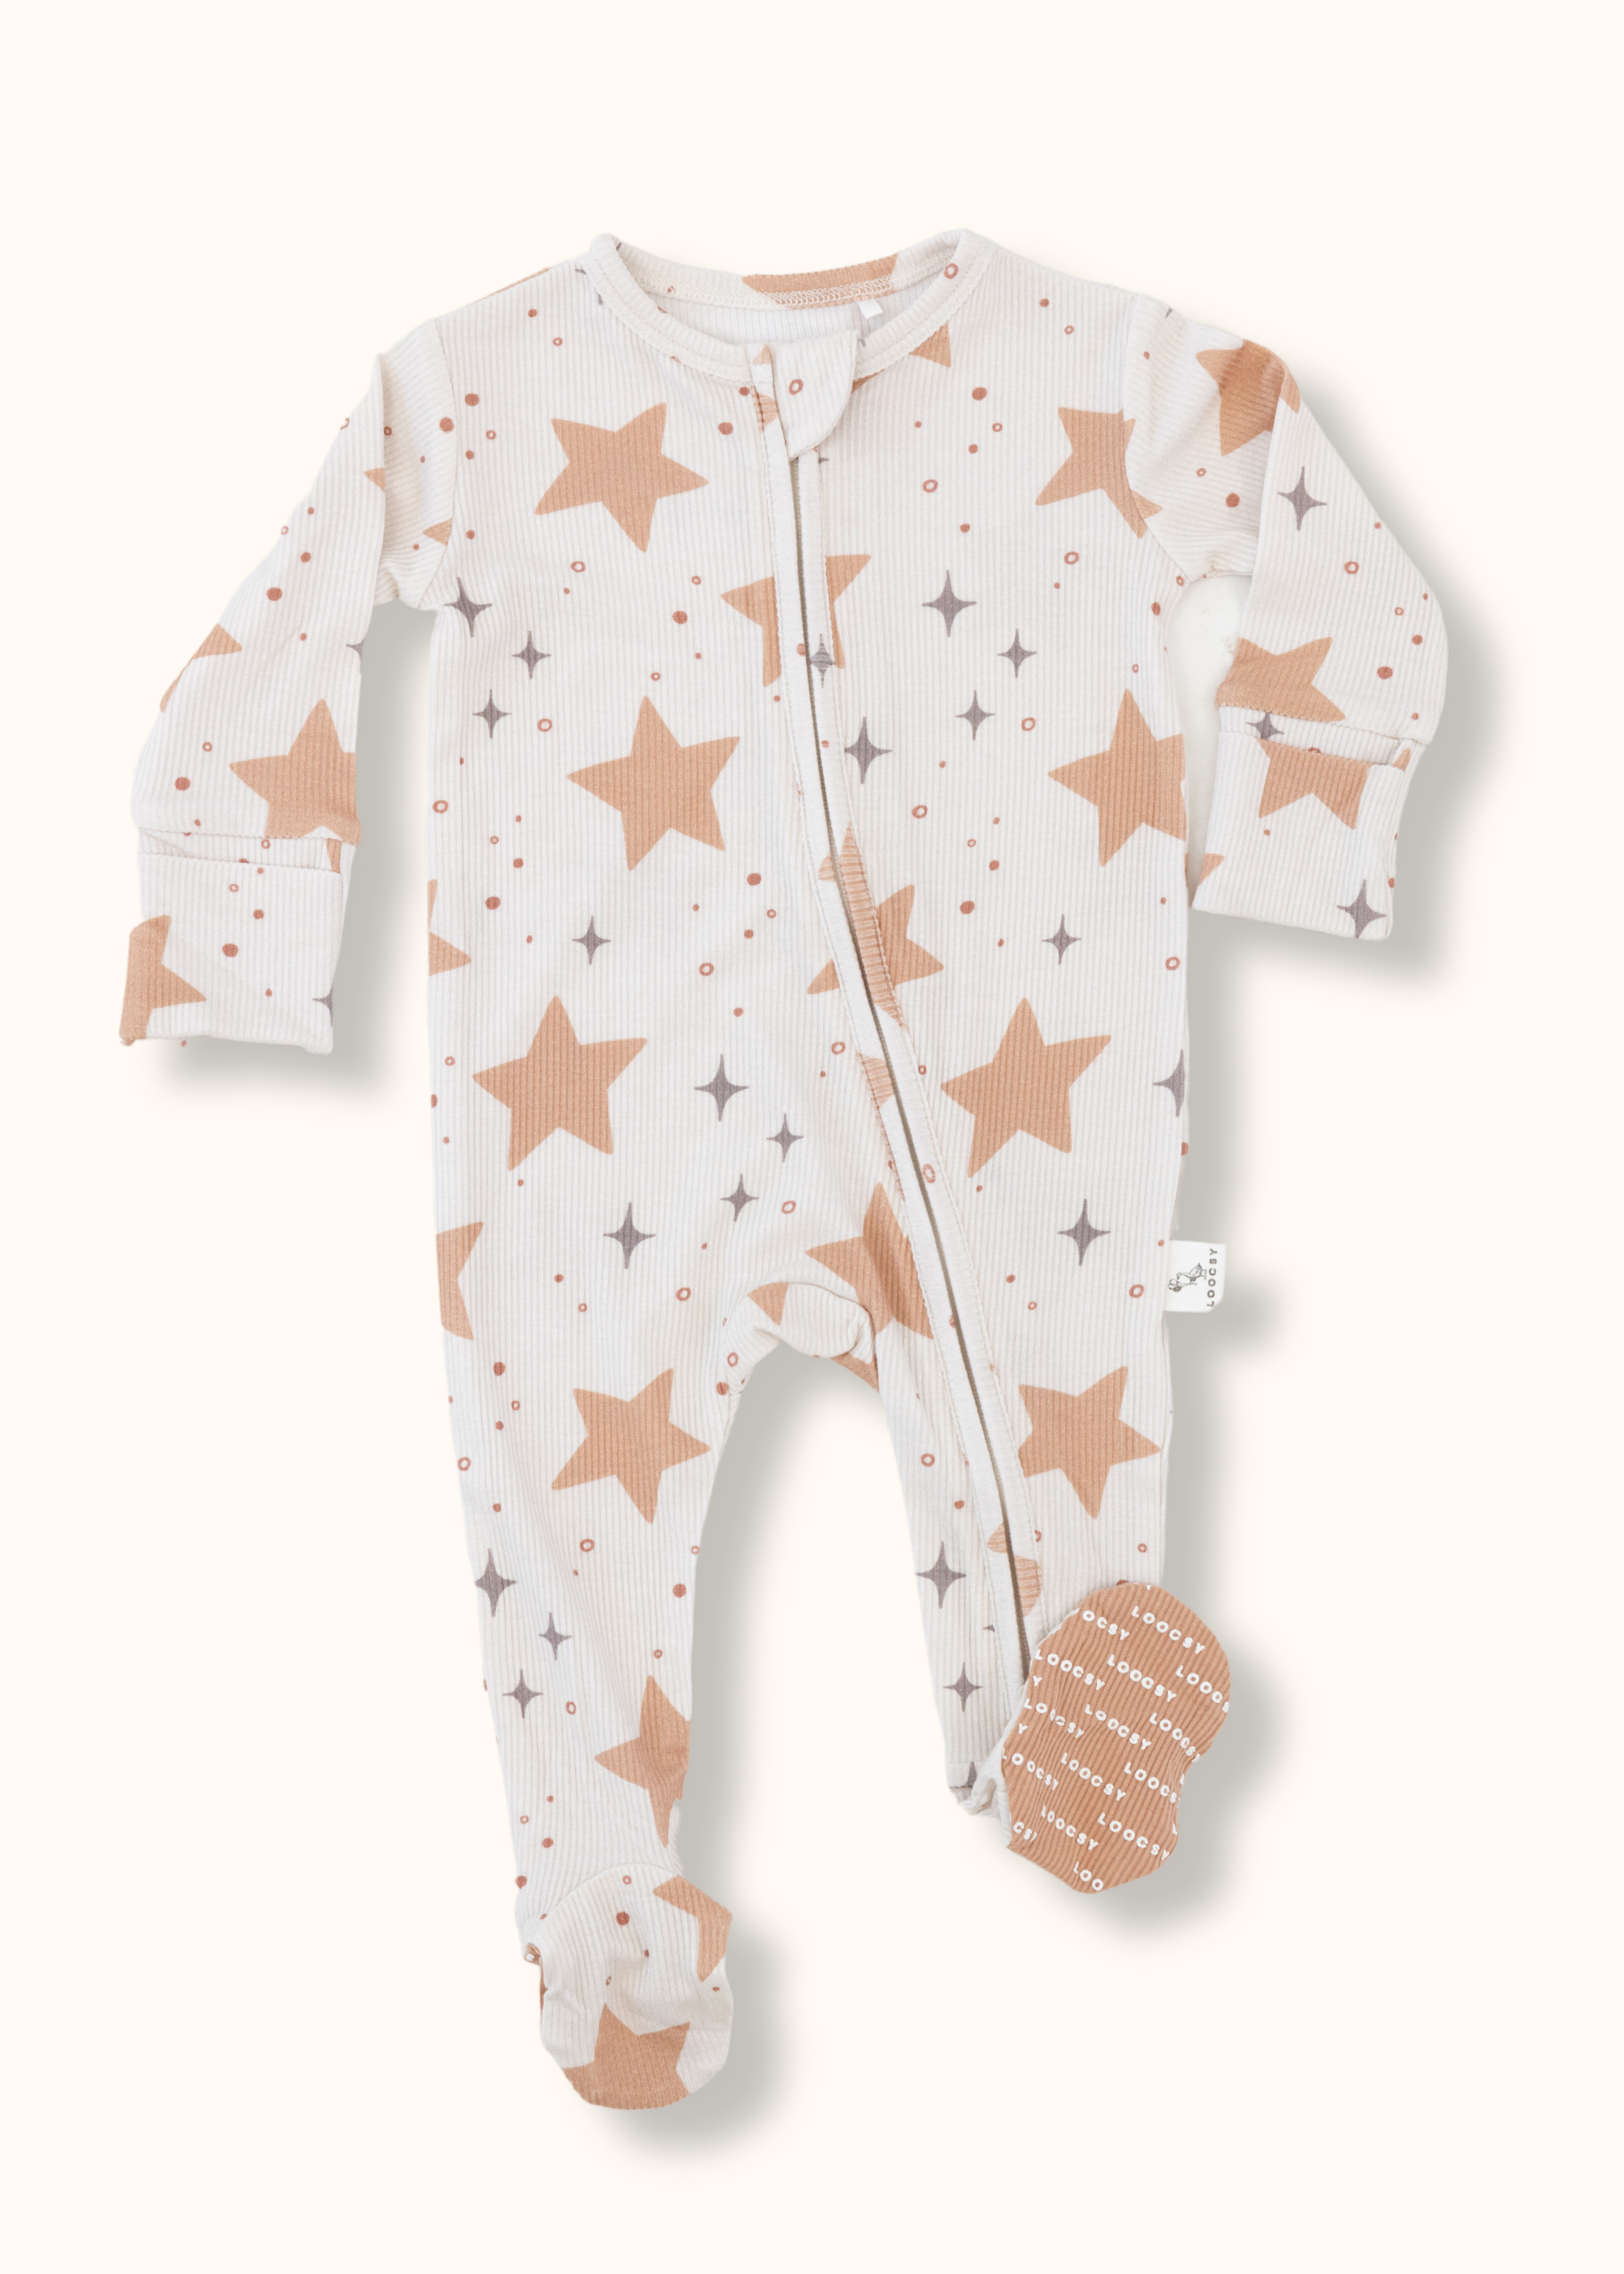 Counting Stars Footie Pajama